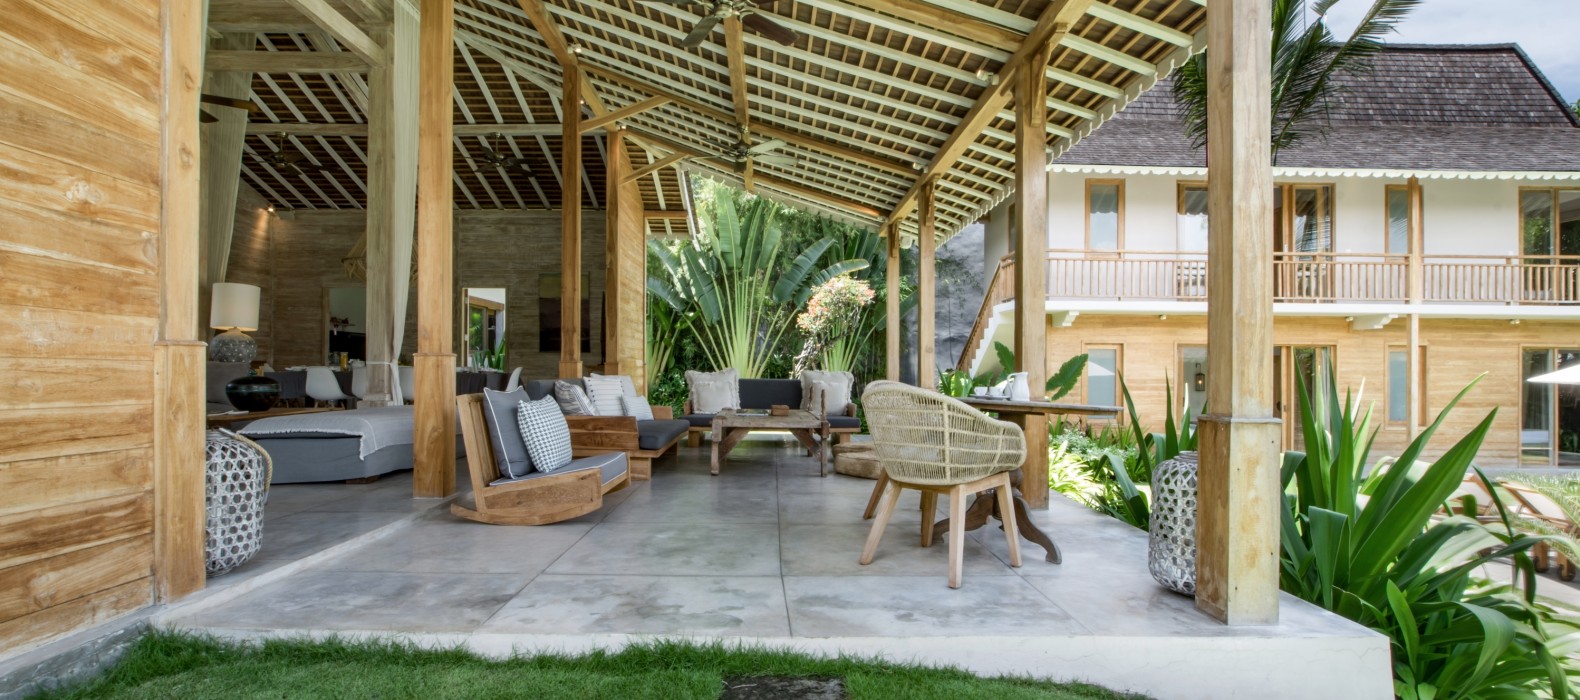 Exterior chill area of Villa Alea in Bali